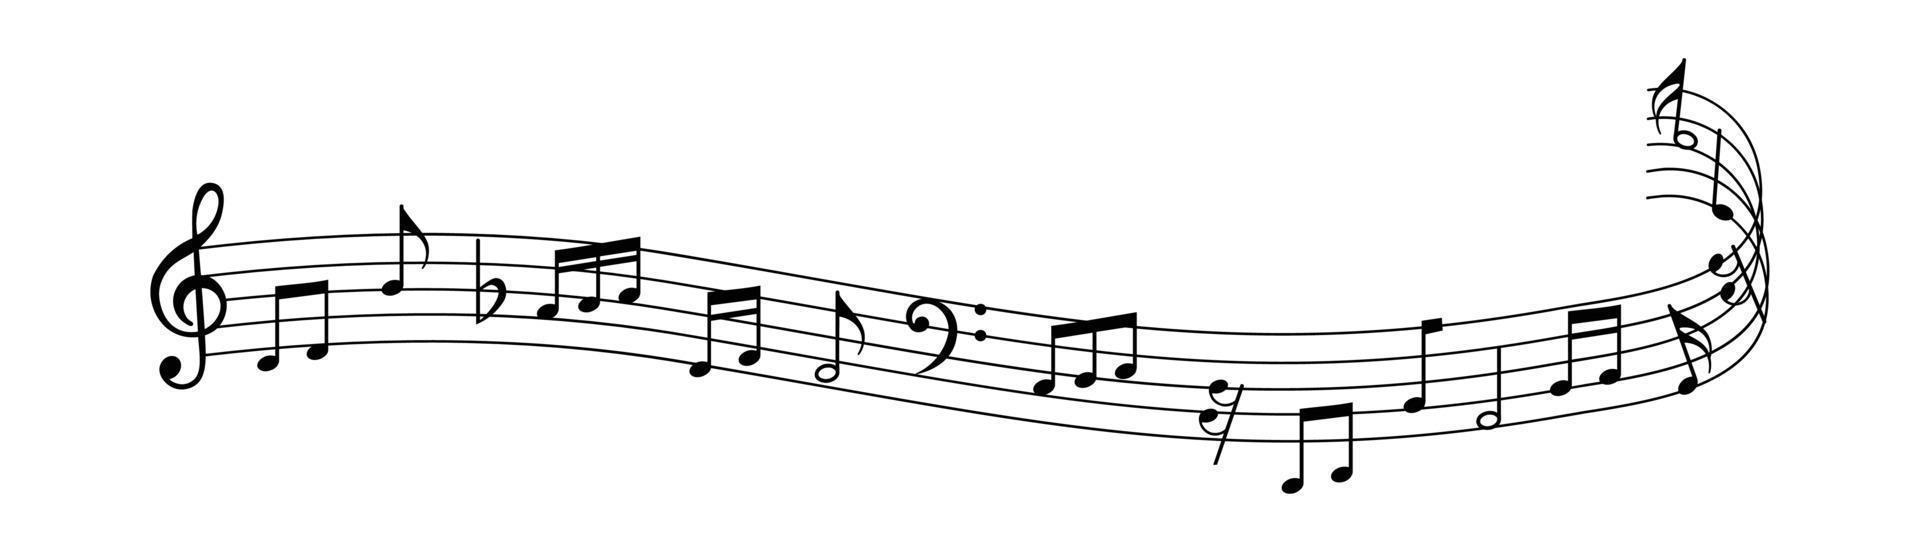 Musiknoten-Icon-Set, Musiknoten-Symbol, Musiknoten-Welle, Musiknoten auf Vektorillustration vektor